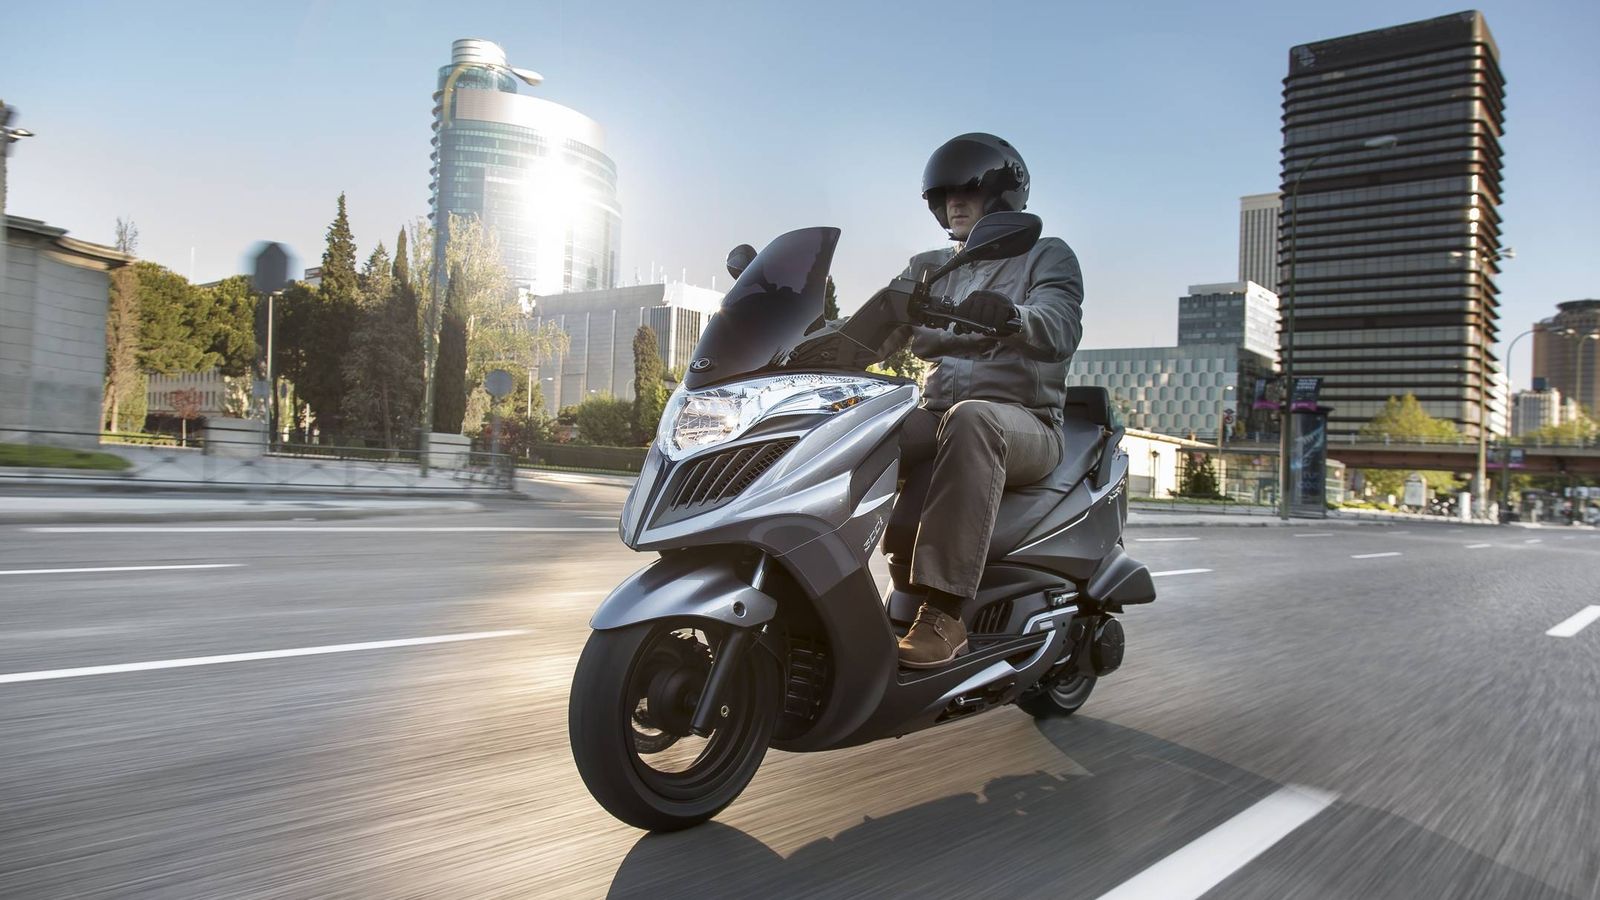 Foto: La moto favorece una circulación más ágil y reduce la contaminación en ciudad.